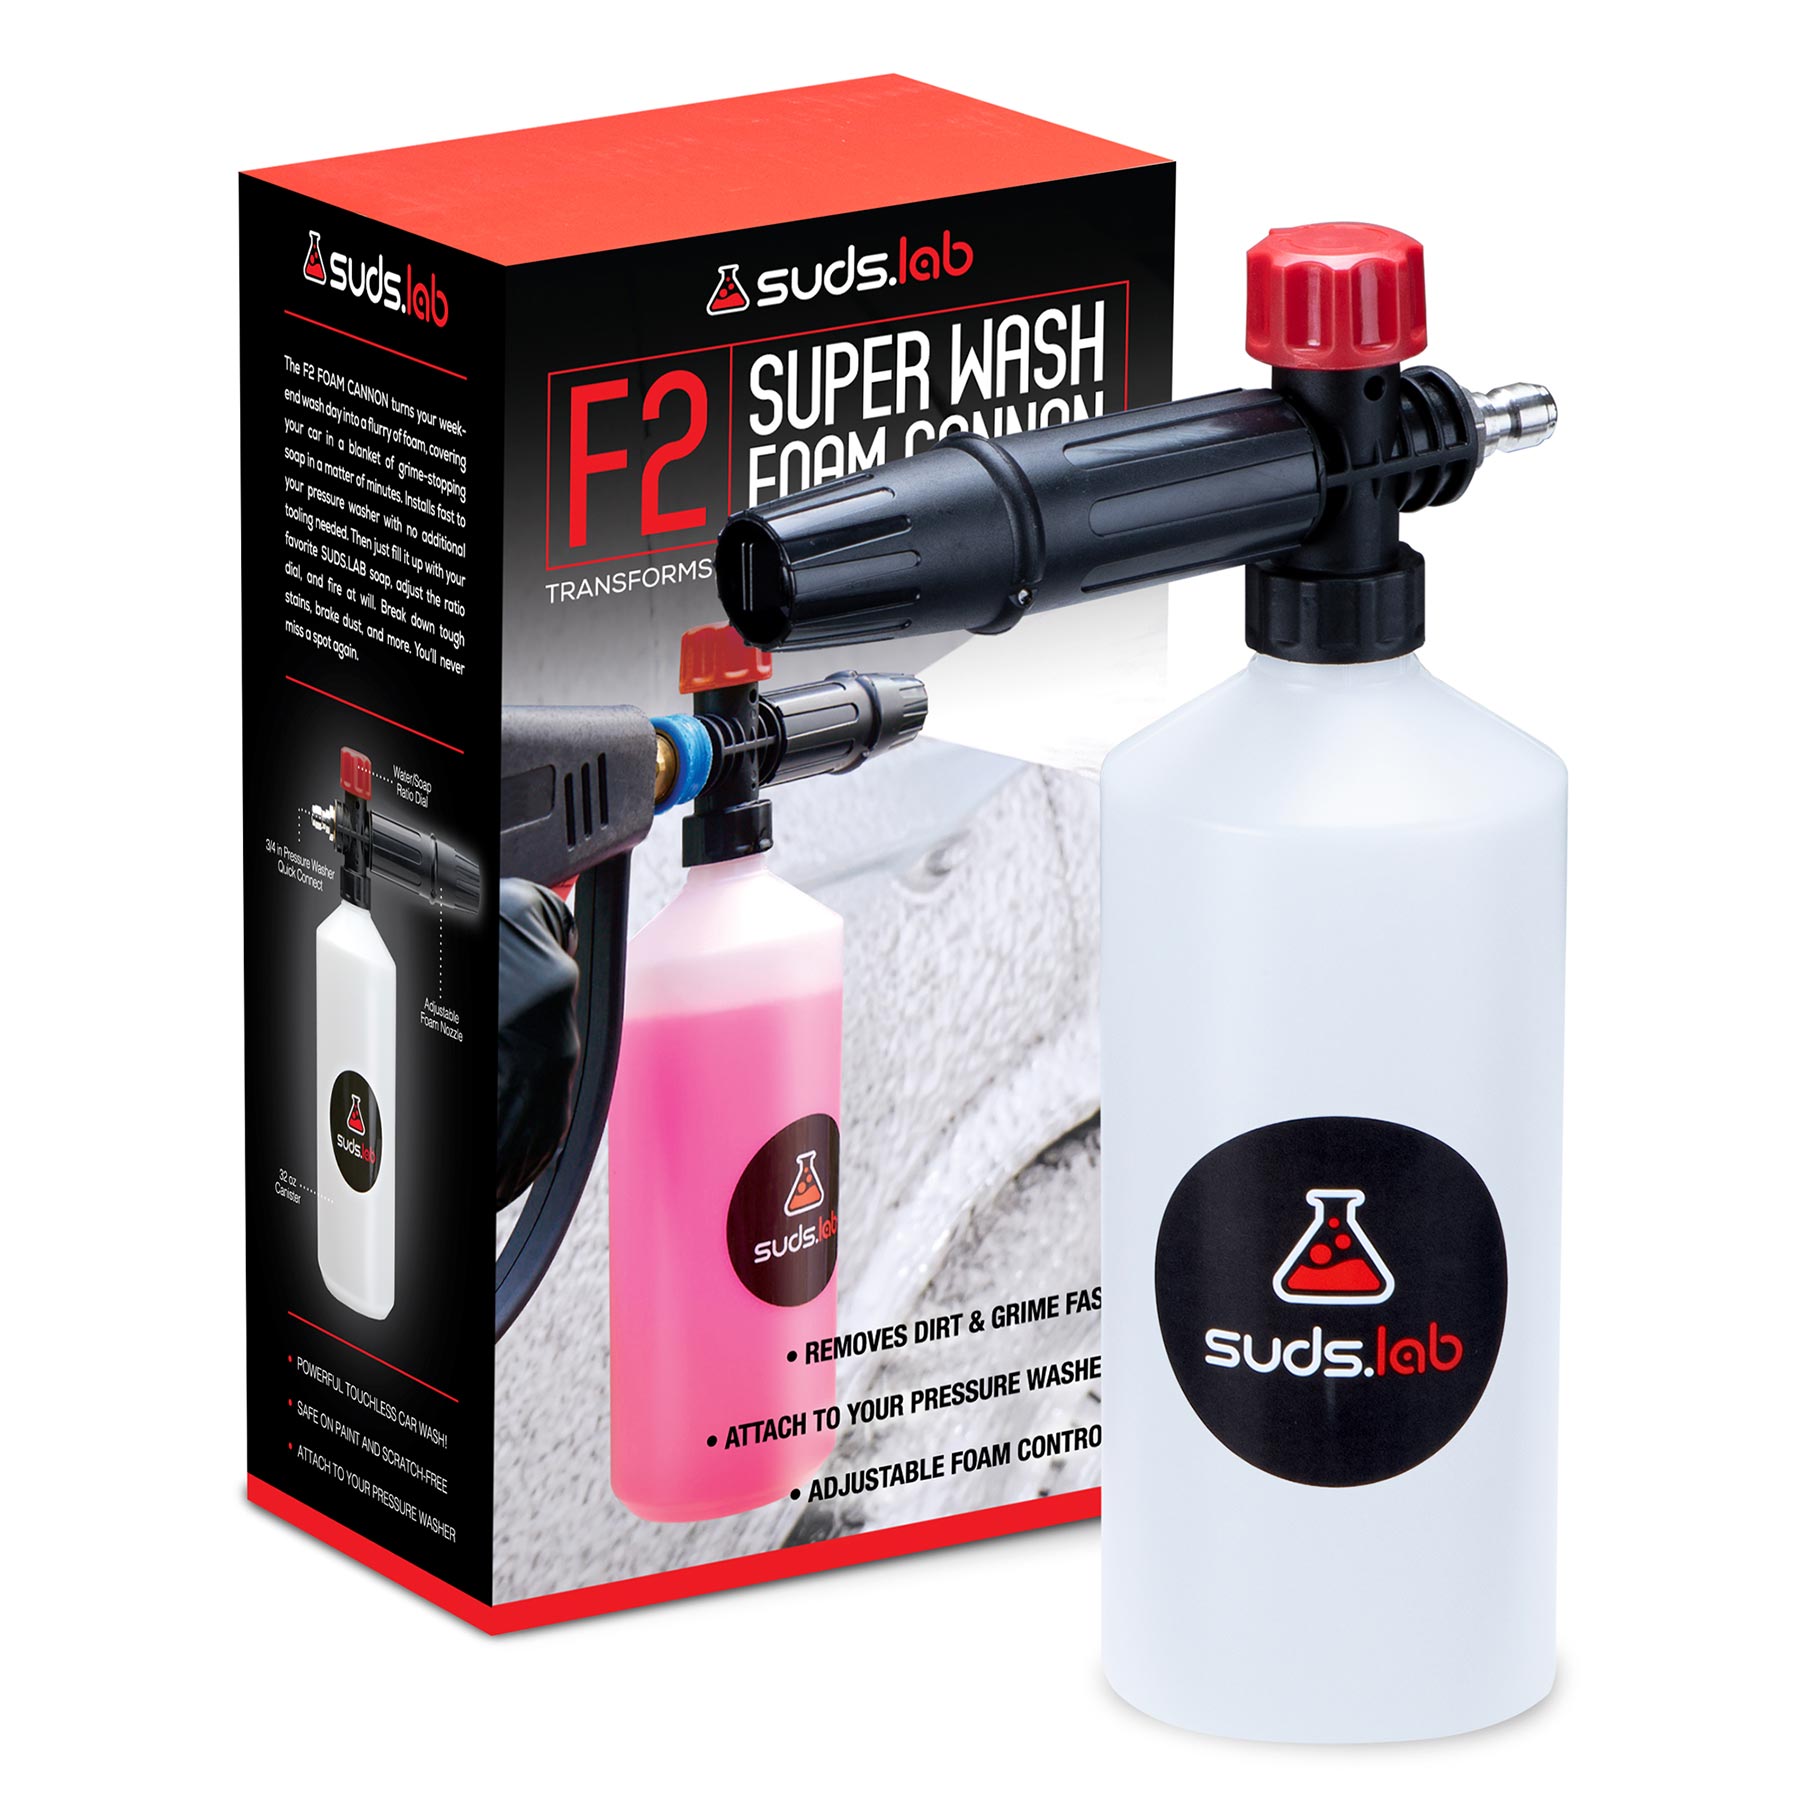 F2 Super Wash Foam Cannon